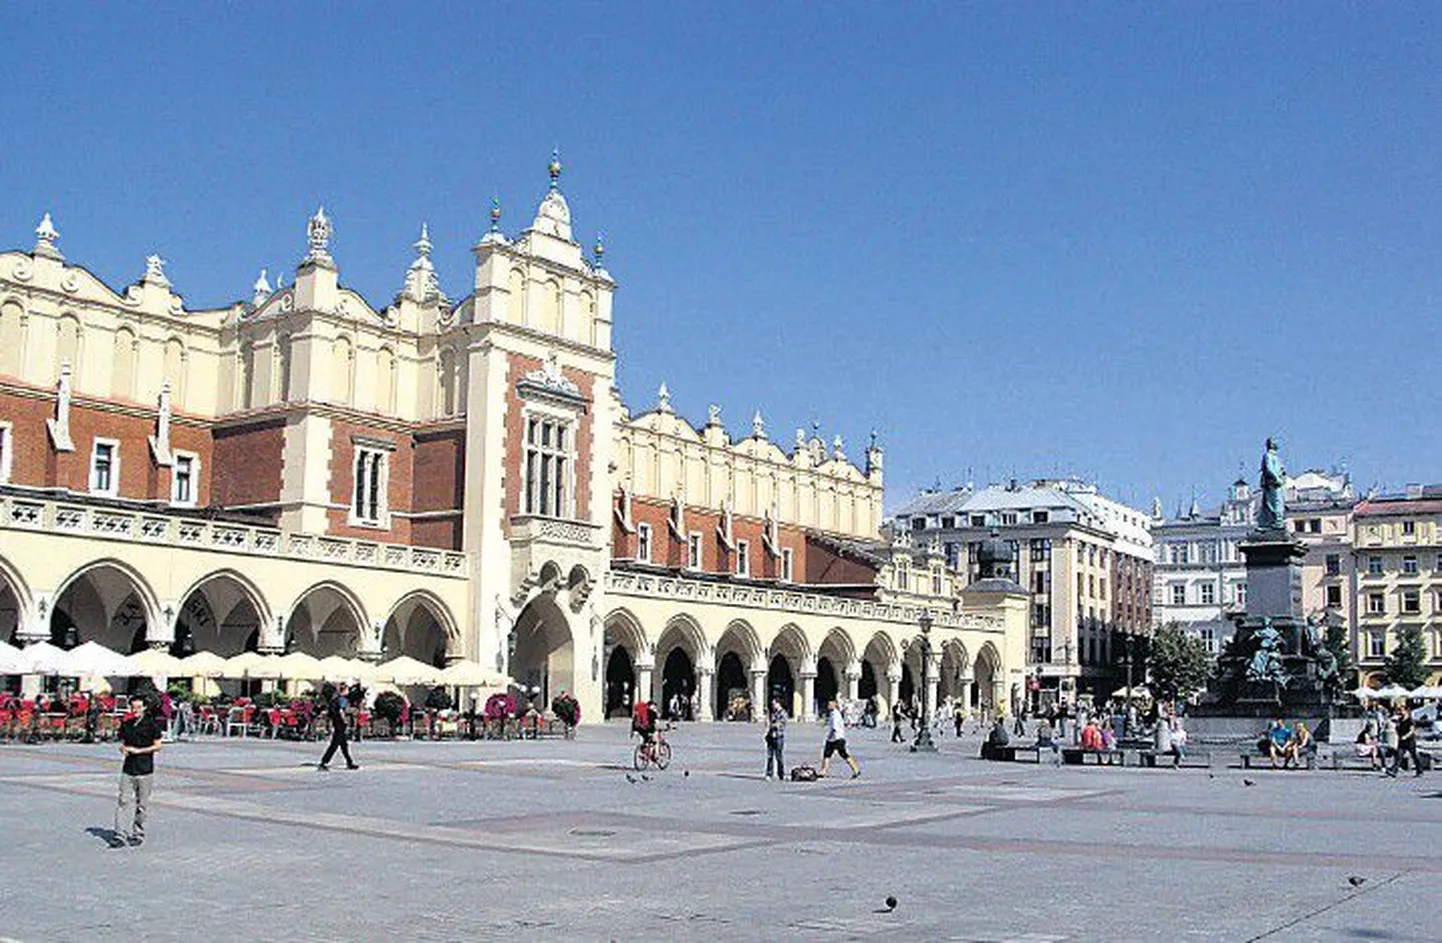 Основанный в VII веке Краков был столицей Польши до 1596 года, поэтому его архитектура по-столичному величественна. На фото — бывшая рыночная площадь, находящаяся в центре Старого города.